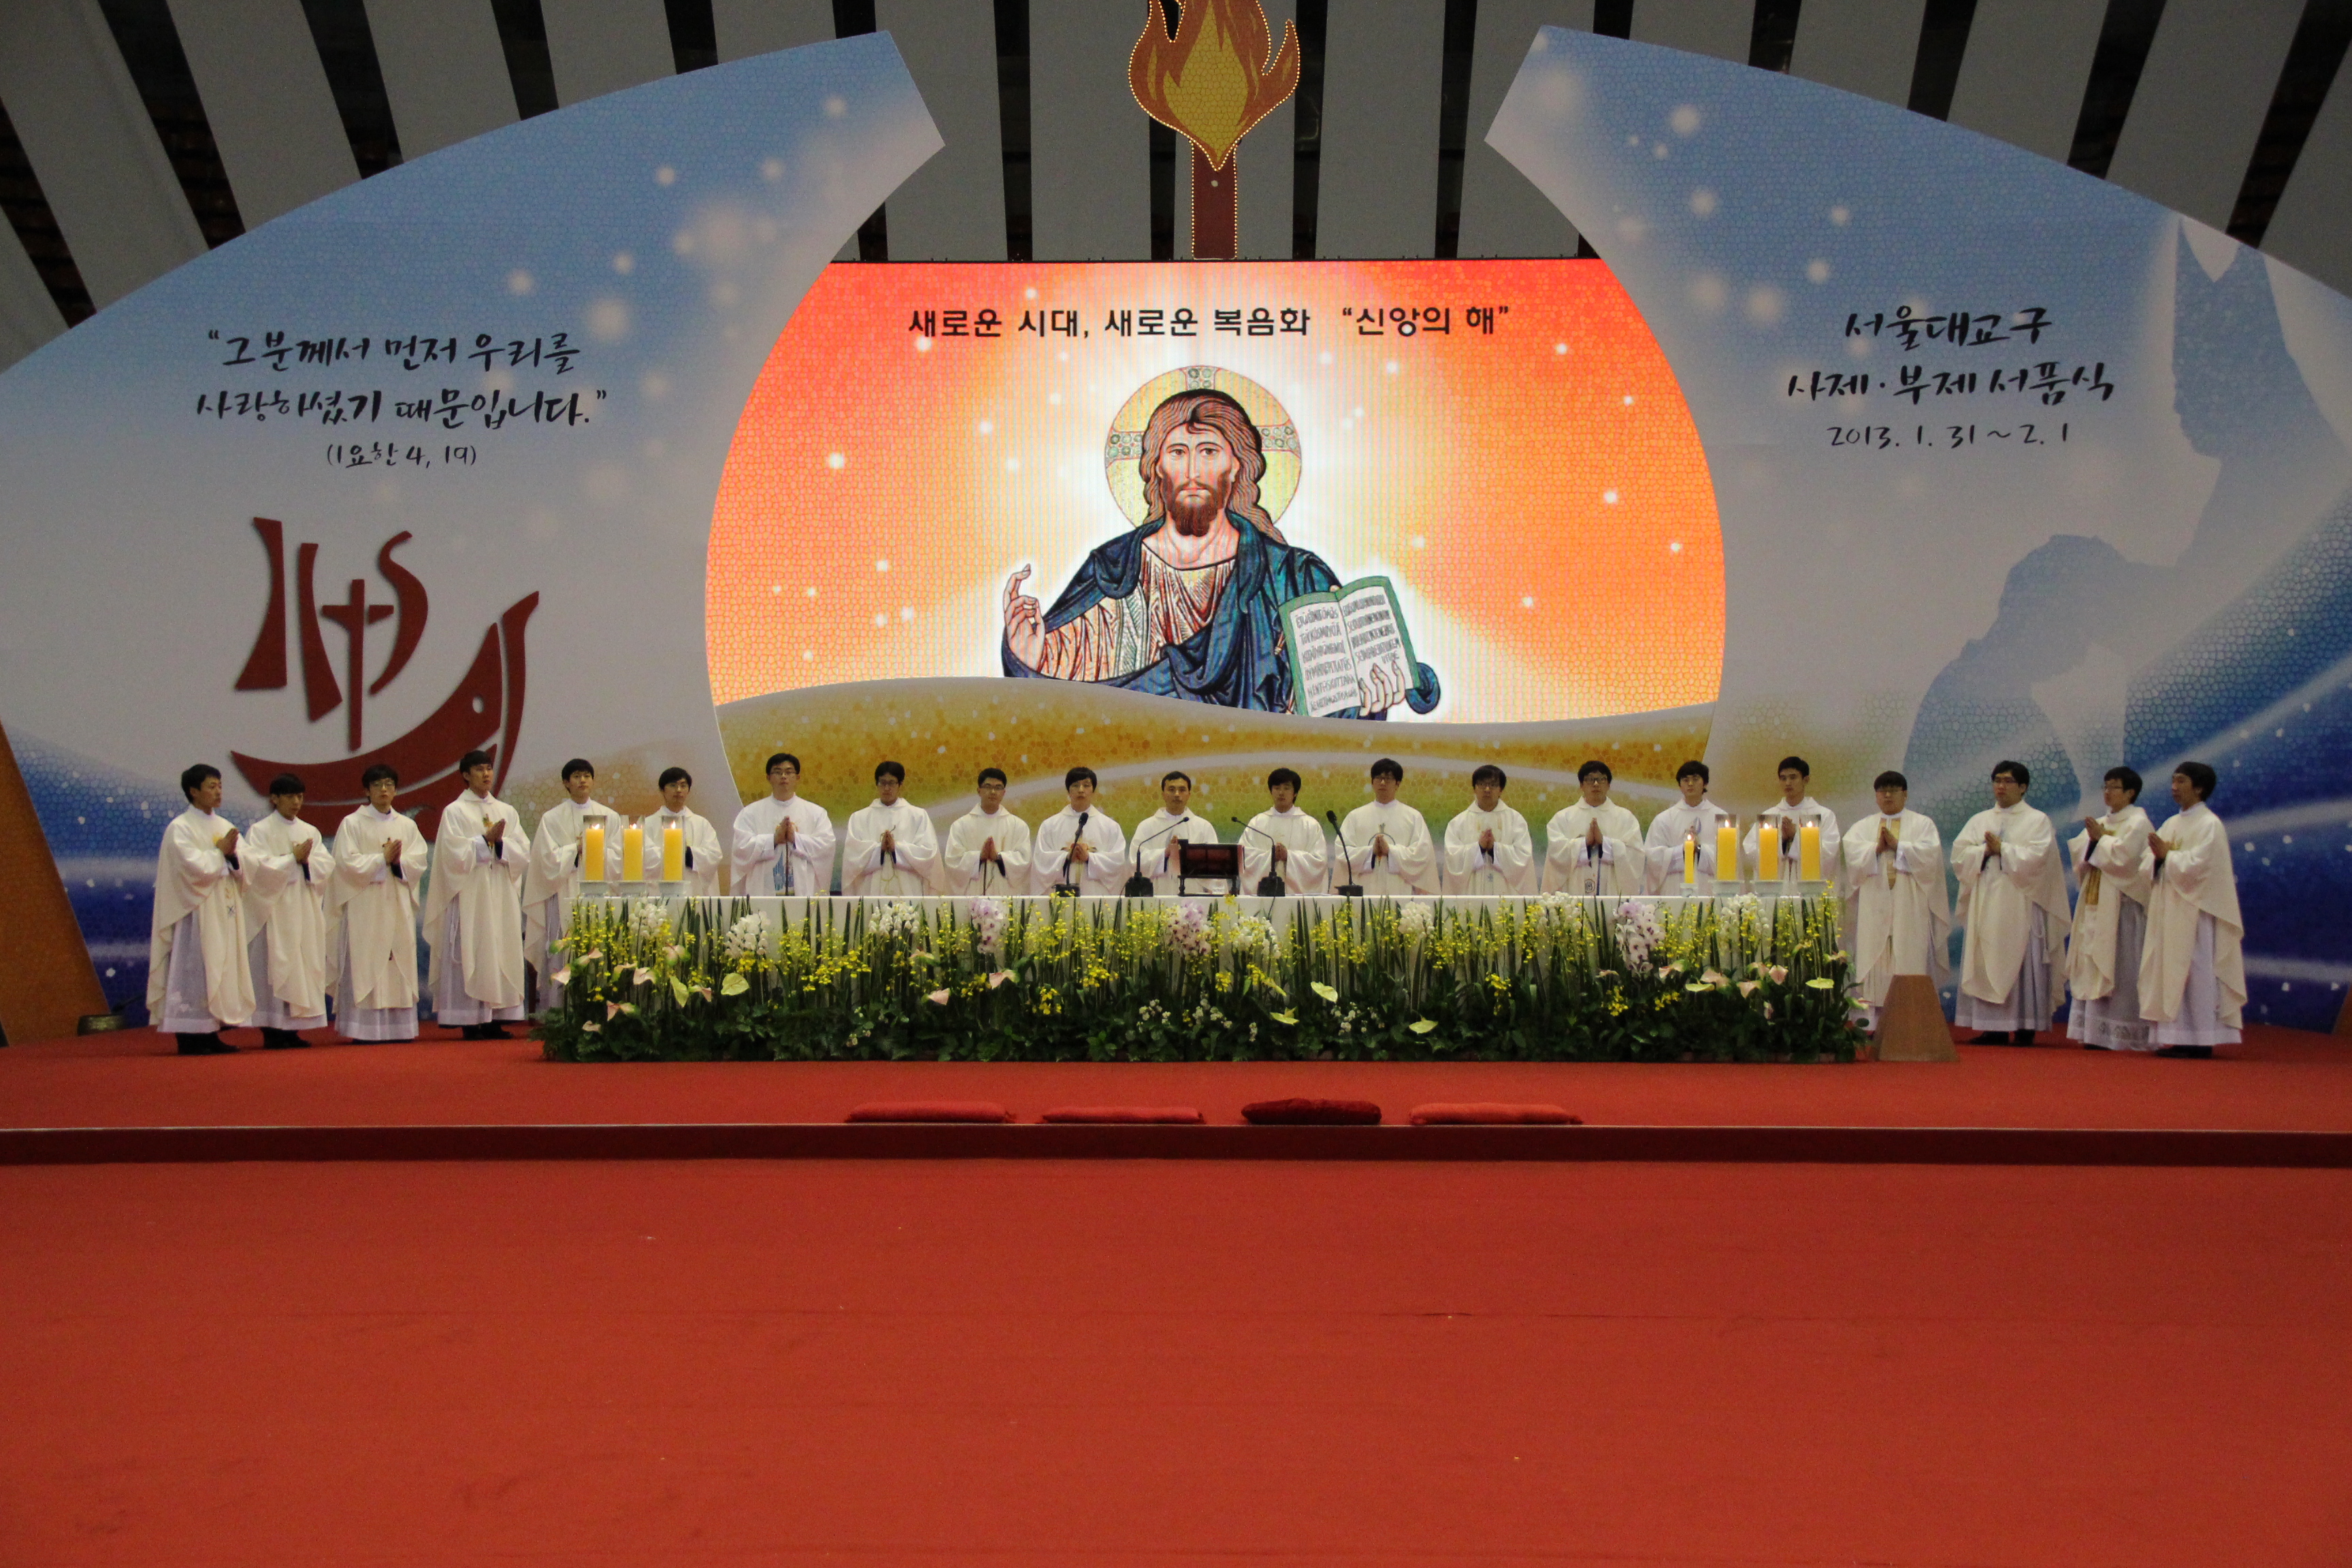 서울대교구 서품식(2013.2.1)의 관련된 이미지 입니다.